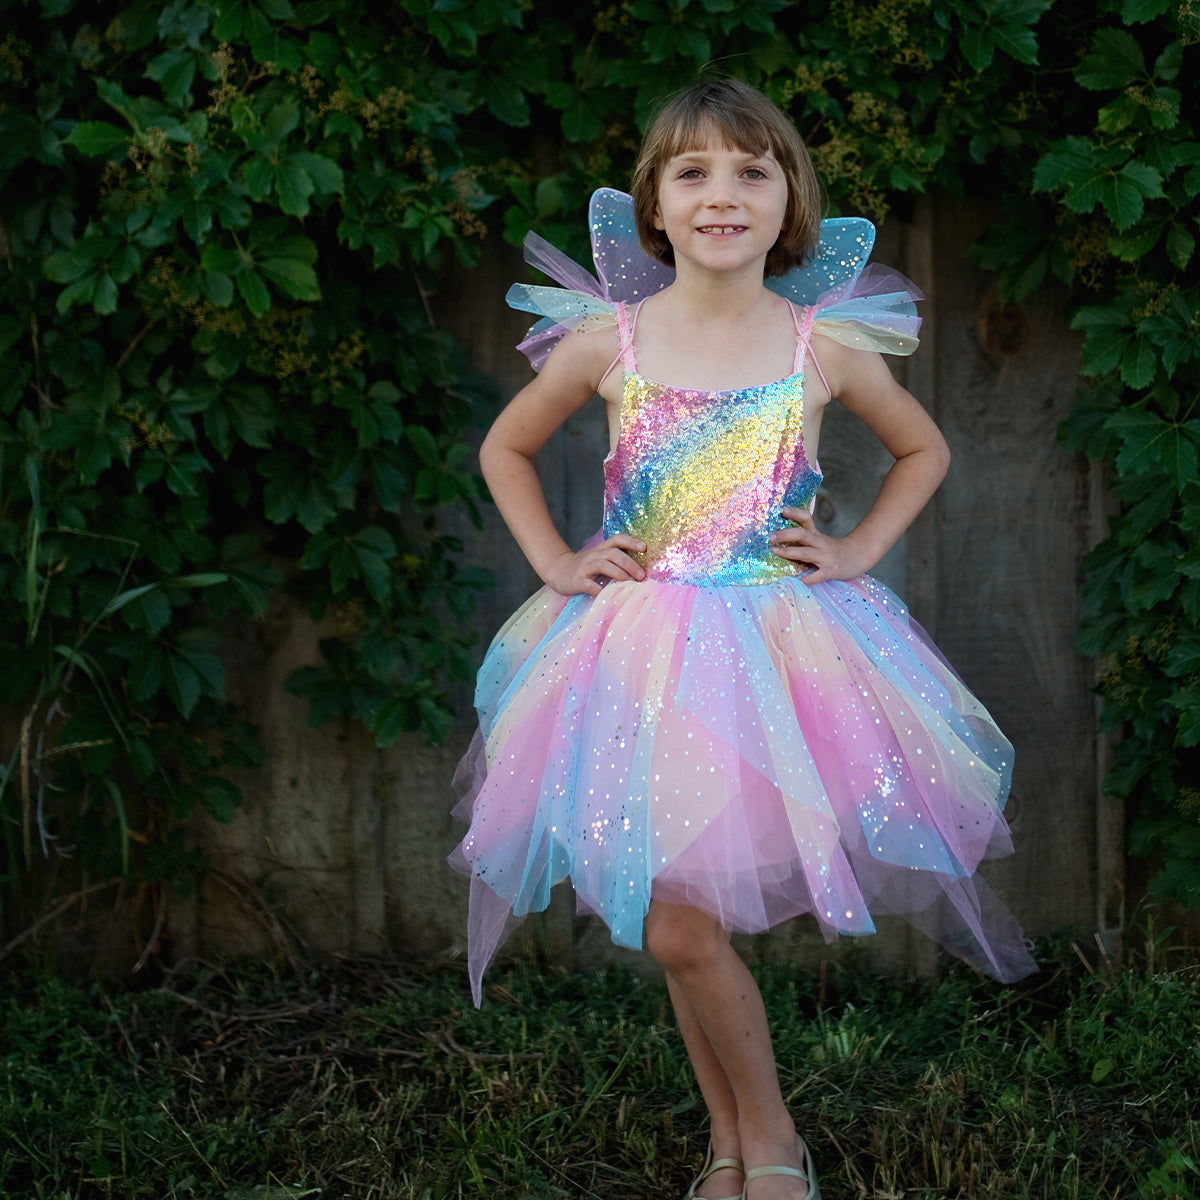 Verzamel je feeënstof en maak je vleugels klaar voor magische avonturen met deze schattige regenboogfee jurk van het merk Great Pretenders. Dit jurkje is ideaal voor elk meisje dat graag in een prachtige fee verandert. VanZus